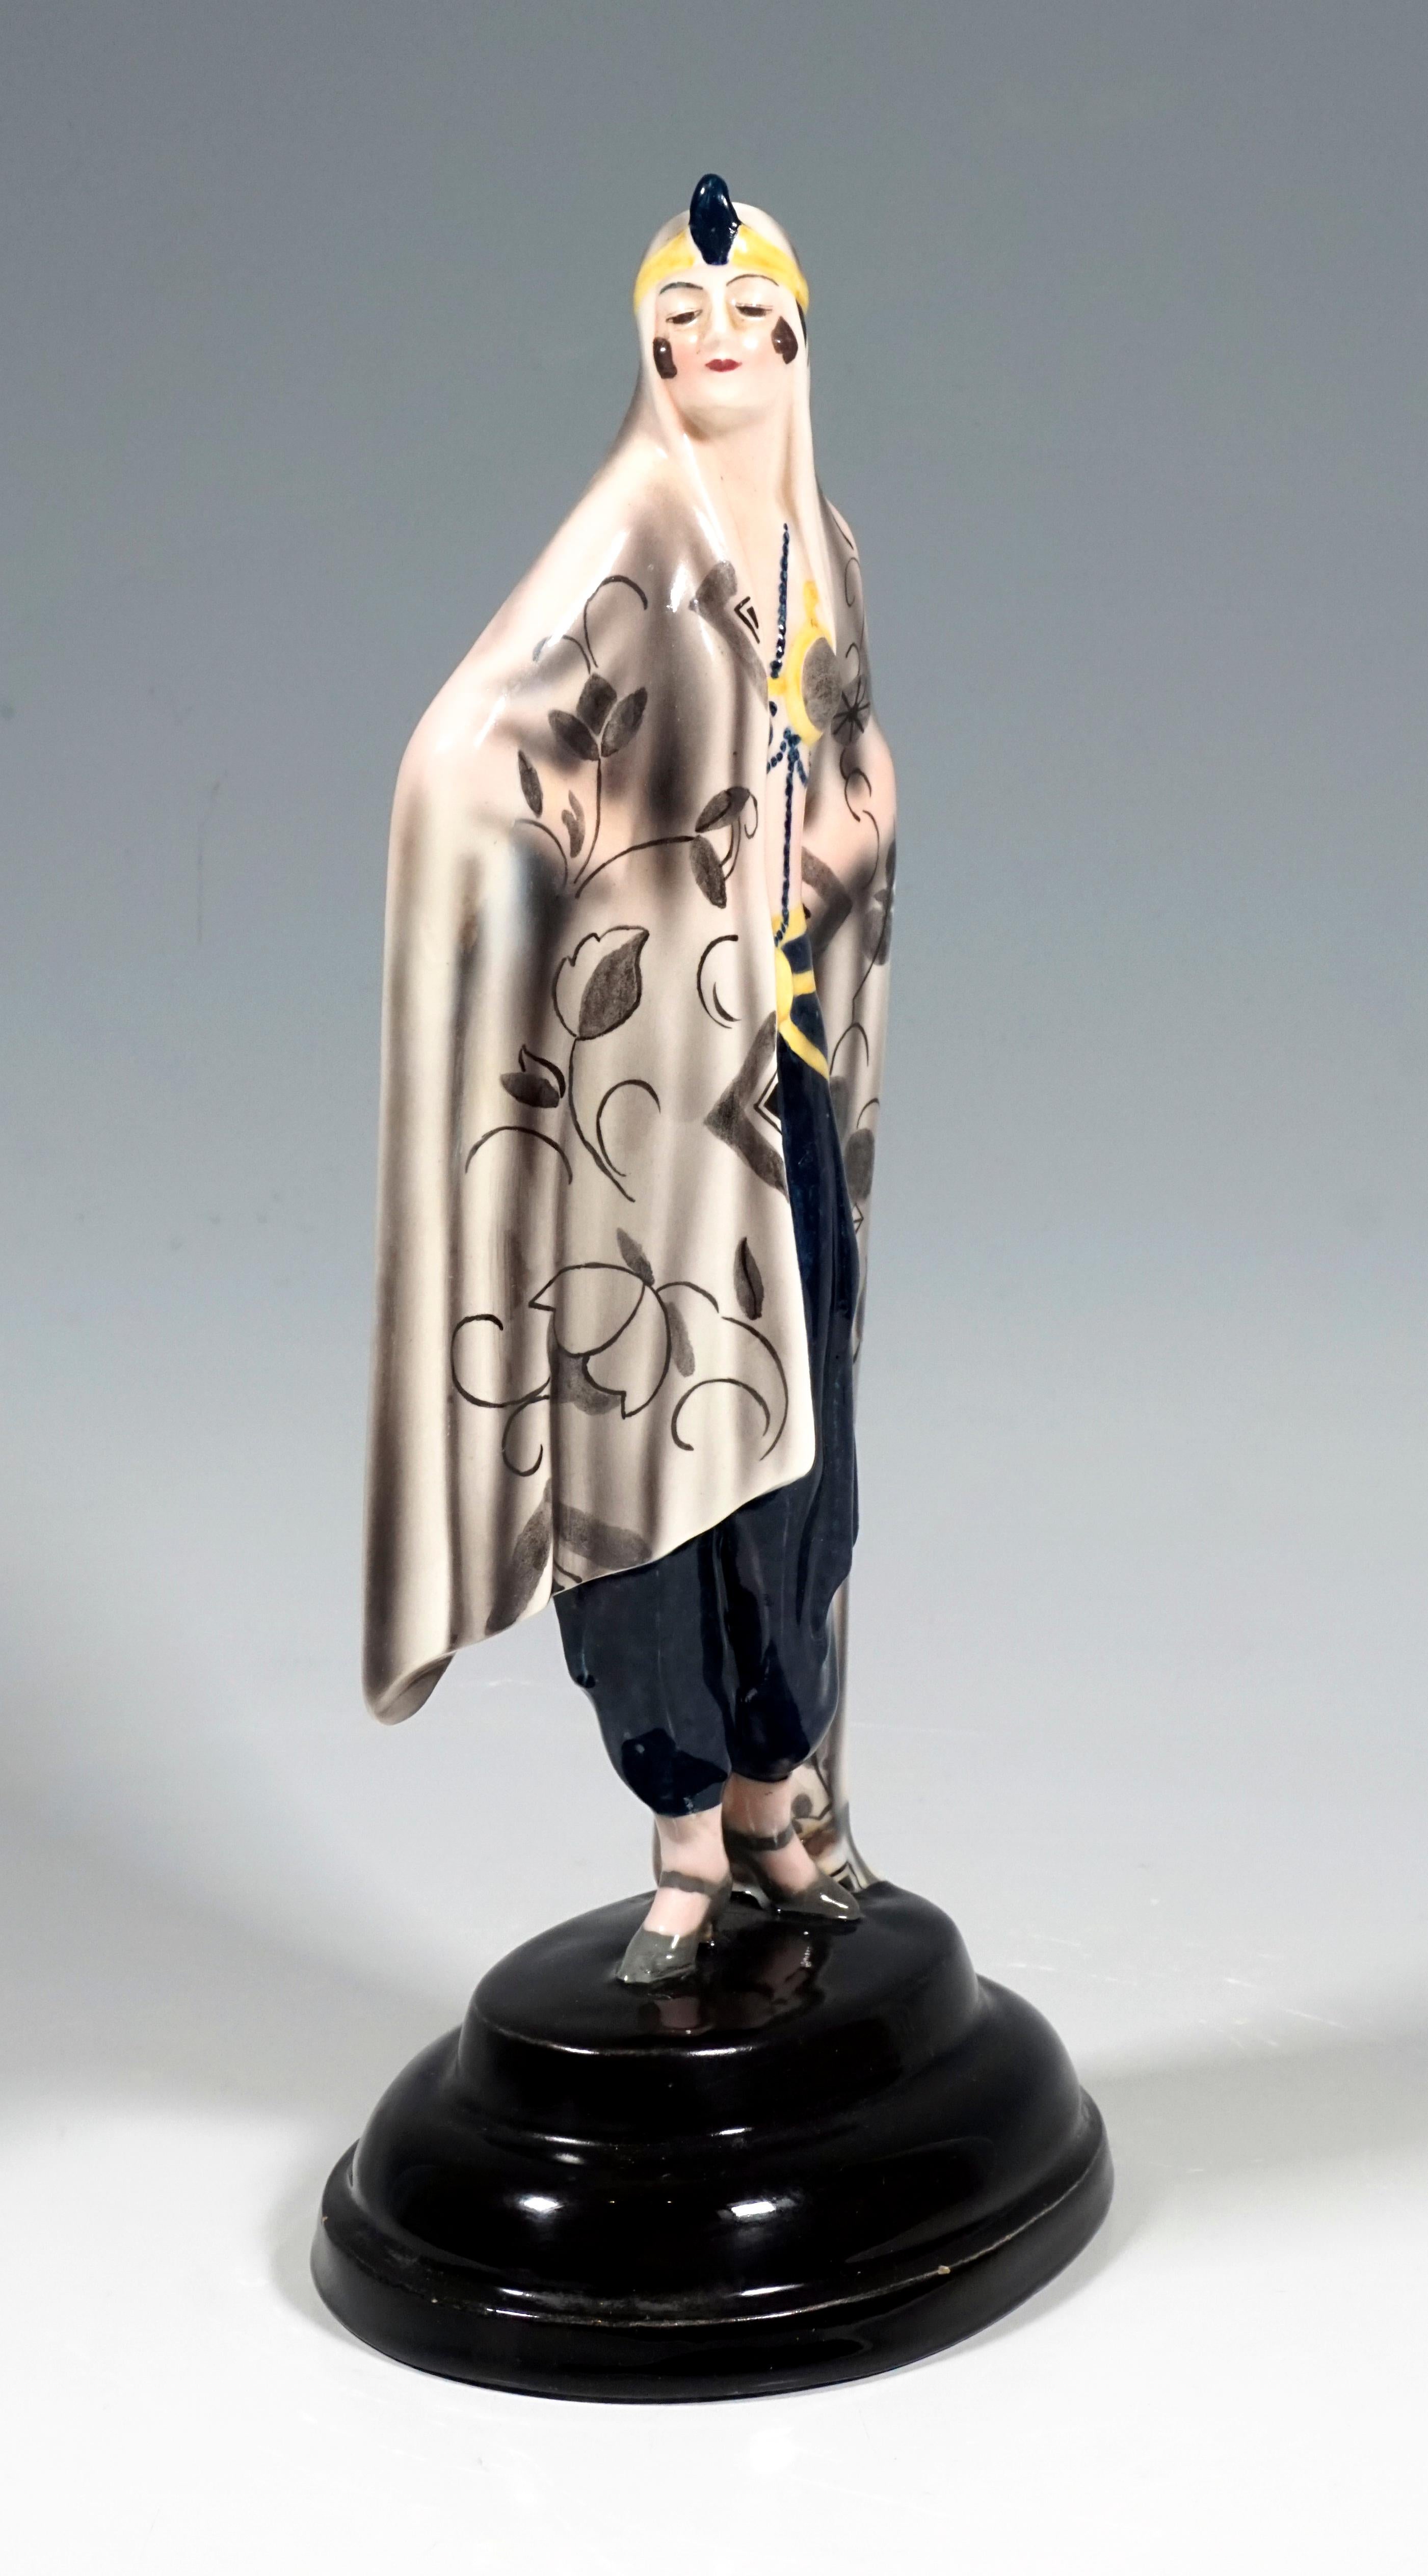 Darstellung einer stehenden, stolz zur Seite blickenden Dame in orientalischem Gewand. Sie ist in ein großes beigefarbenes Tuch gehüllt, das bis zum Boden reicht. Die Vorderseite ist mit einem stilisierten, grau schattierten Blumen- und Rankenmuster